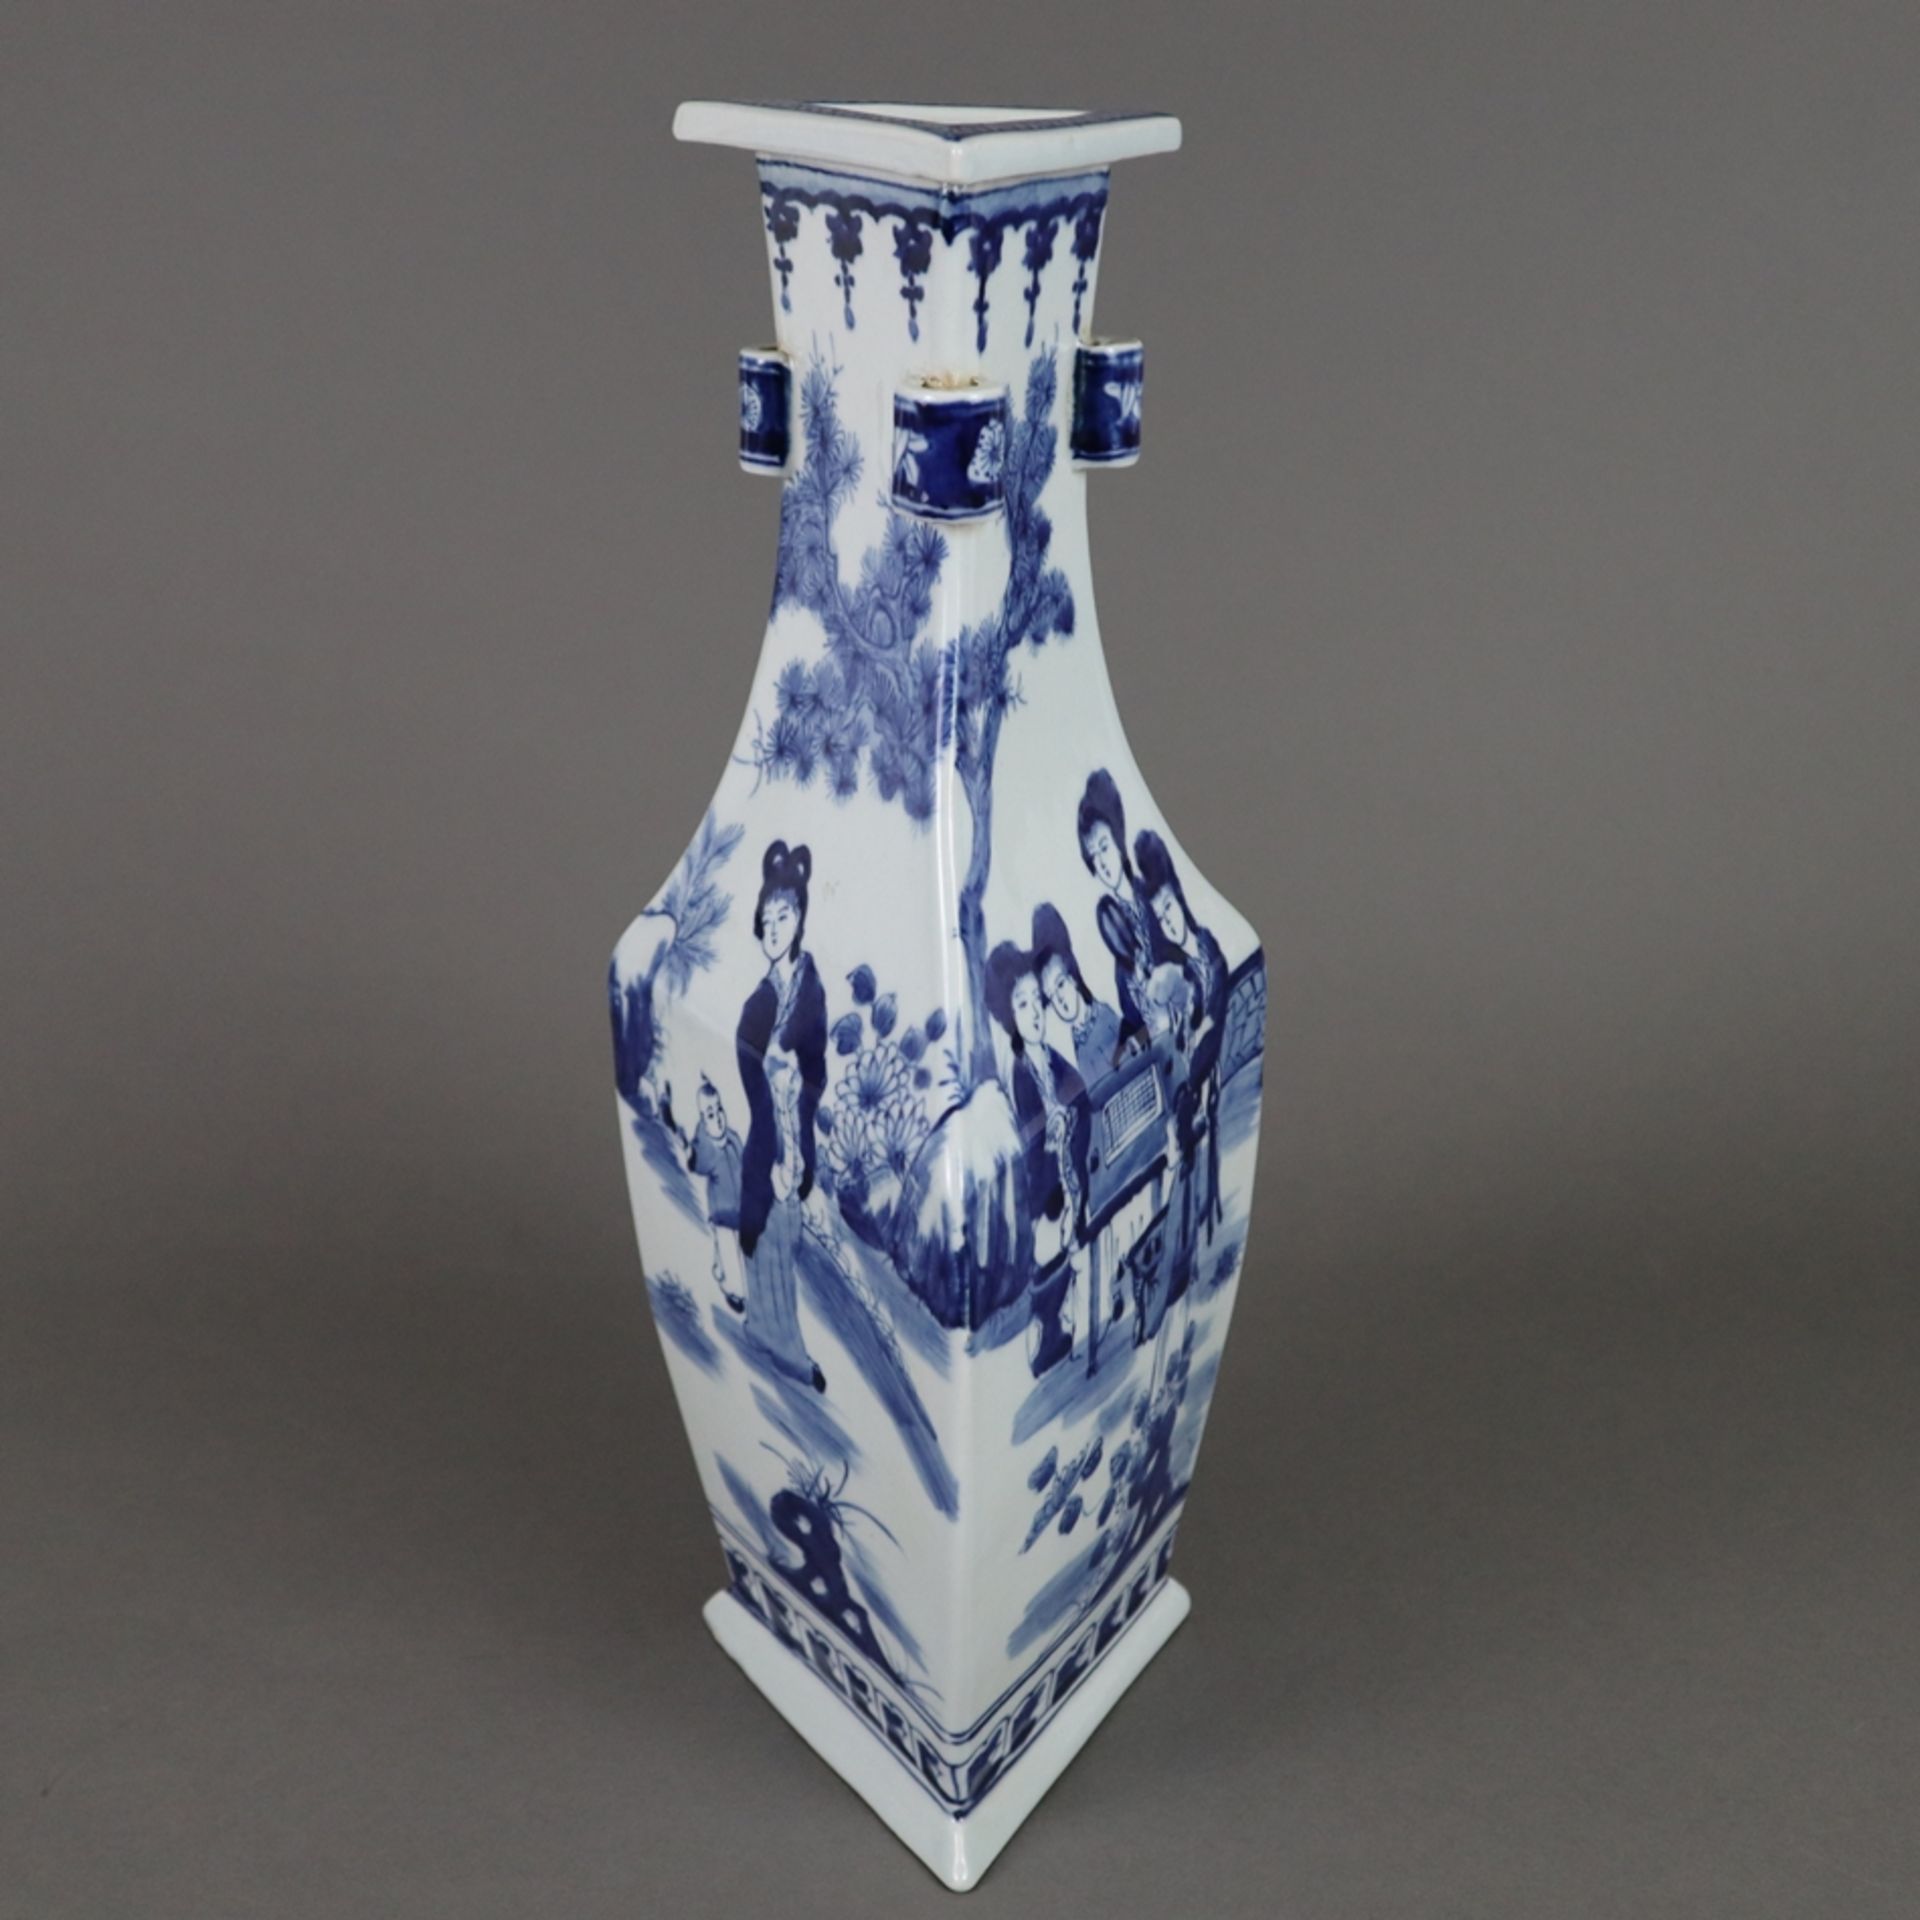 Dreiecksvase - China, allseits dekoriert in Unterglasurblau, Wandung mit von Ornamentborten gerahmt - Bild 3 aus 9